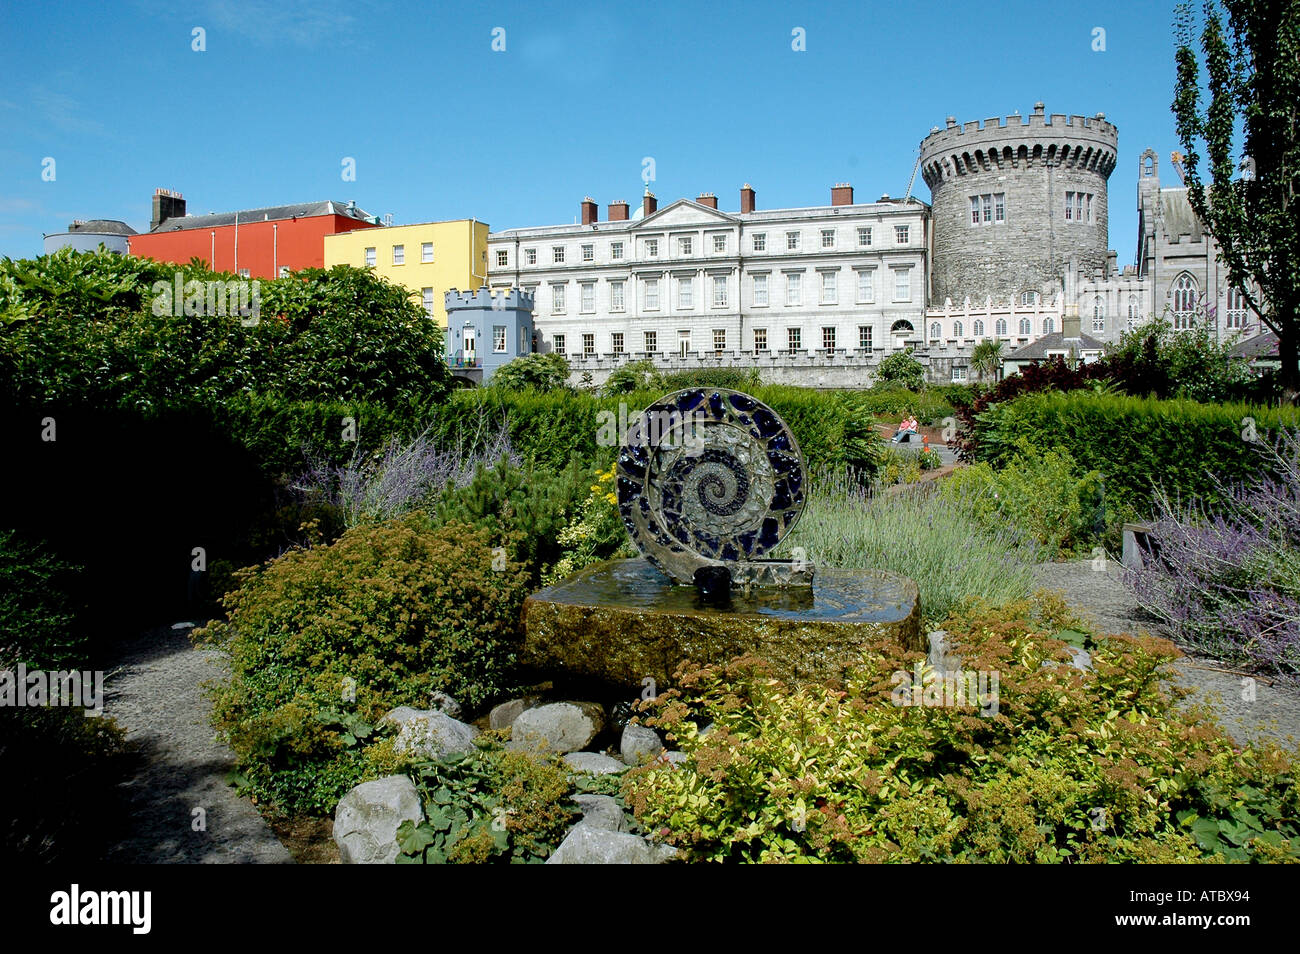 Irlanda : il castello di Dublino e giardini Foto Stock